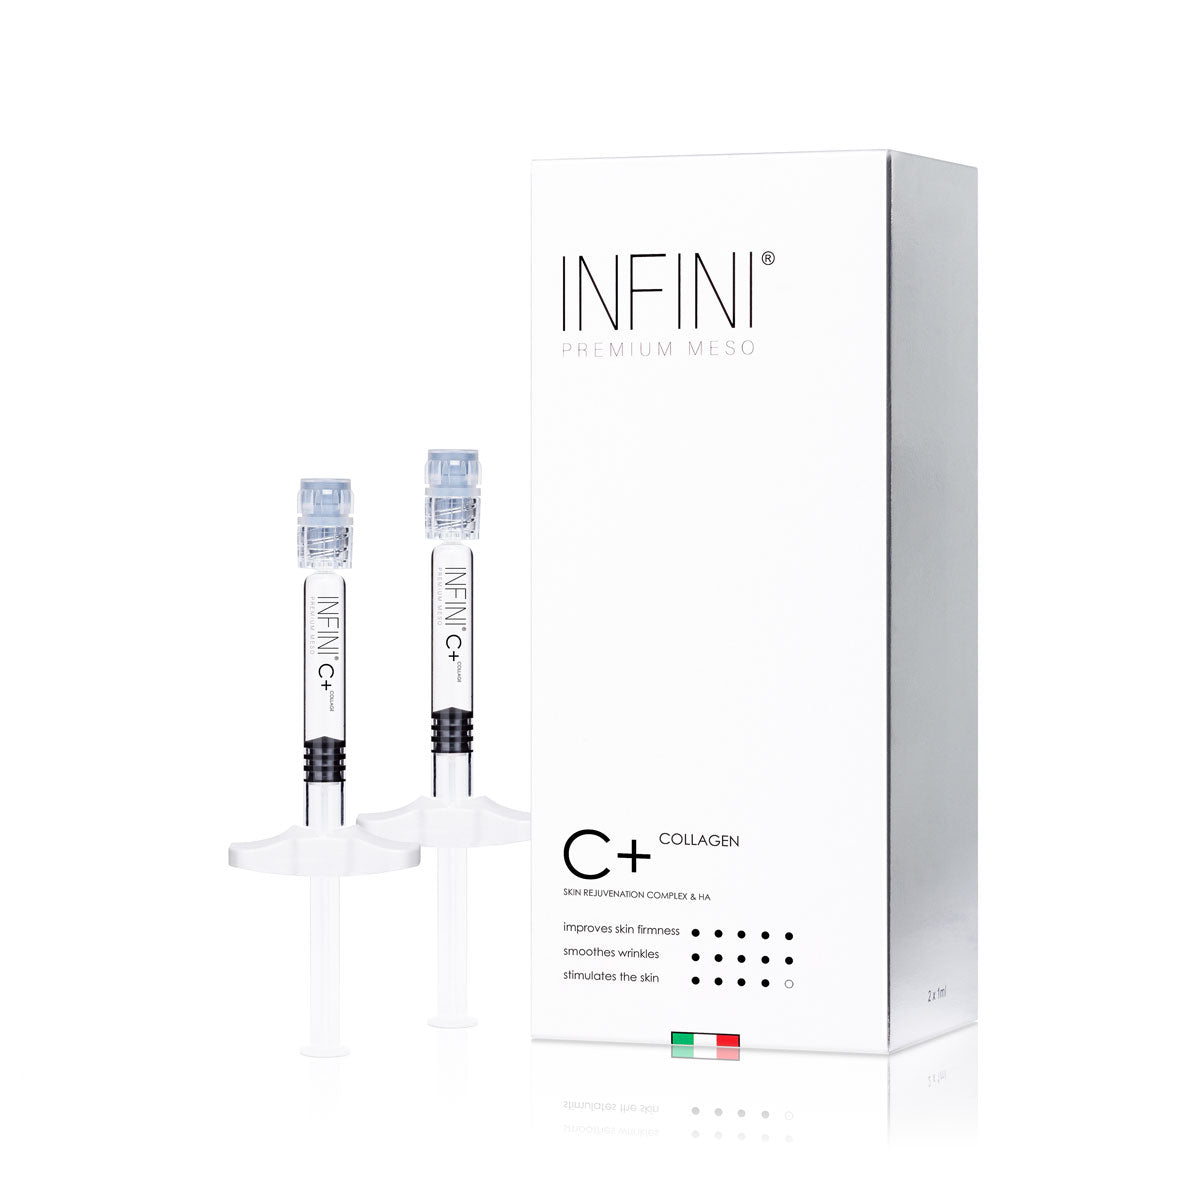 C+ Collagen - INFINI Premium Meso